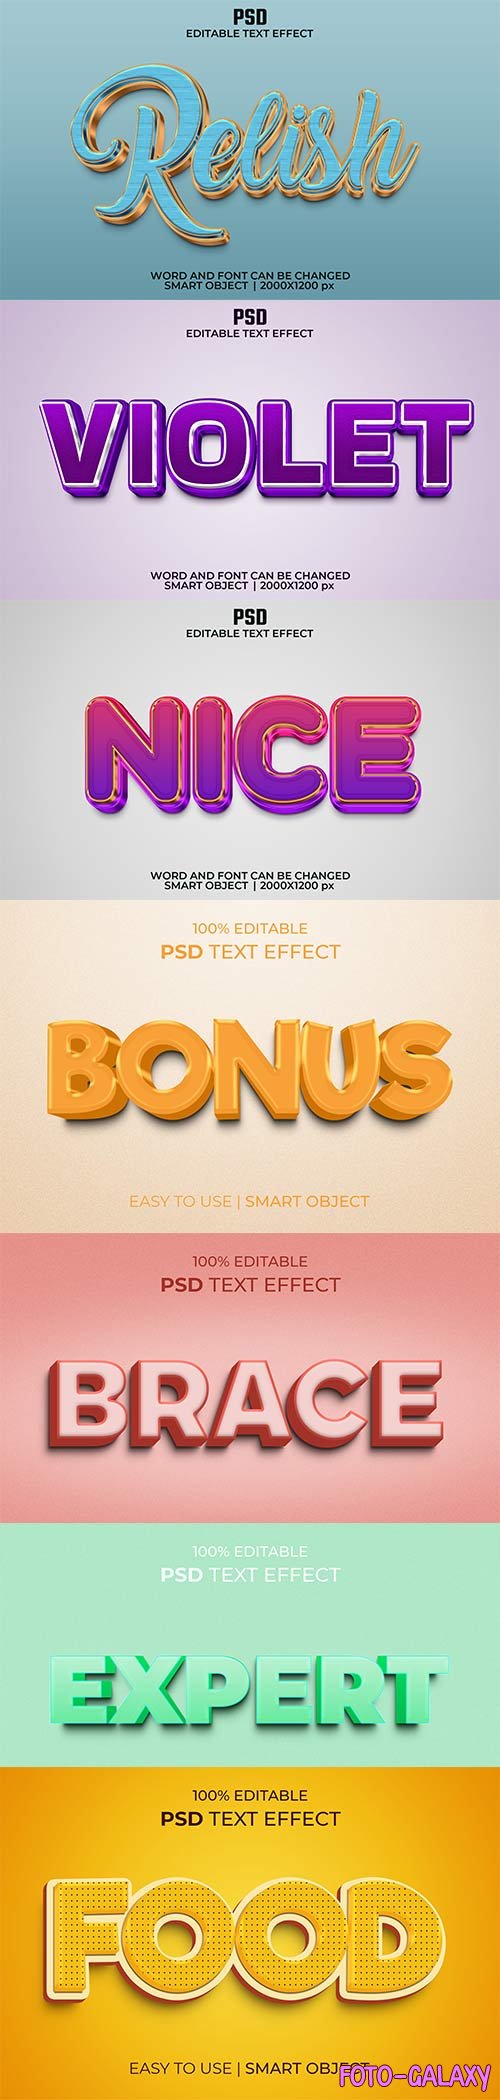 Psd text effect set vol 587